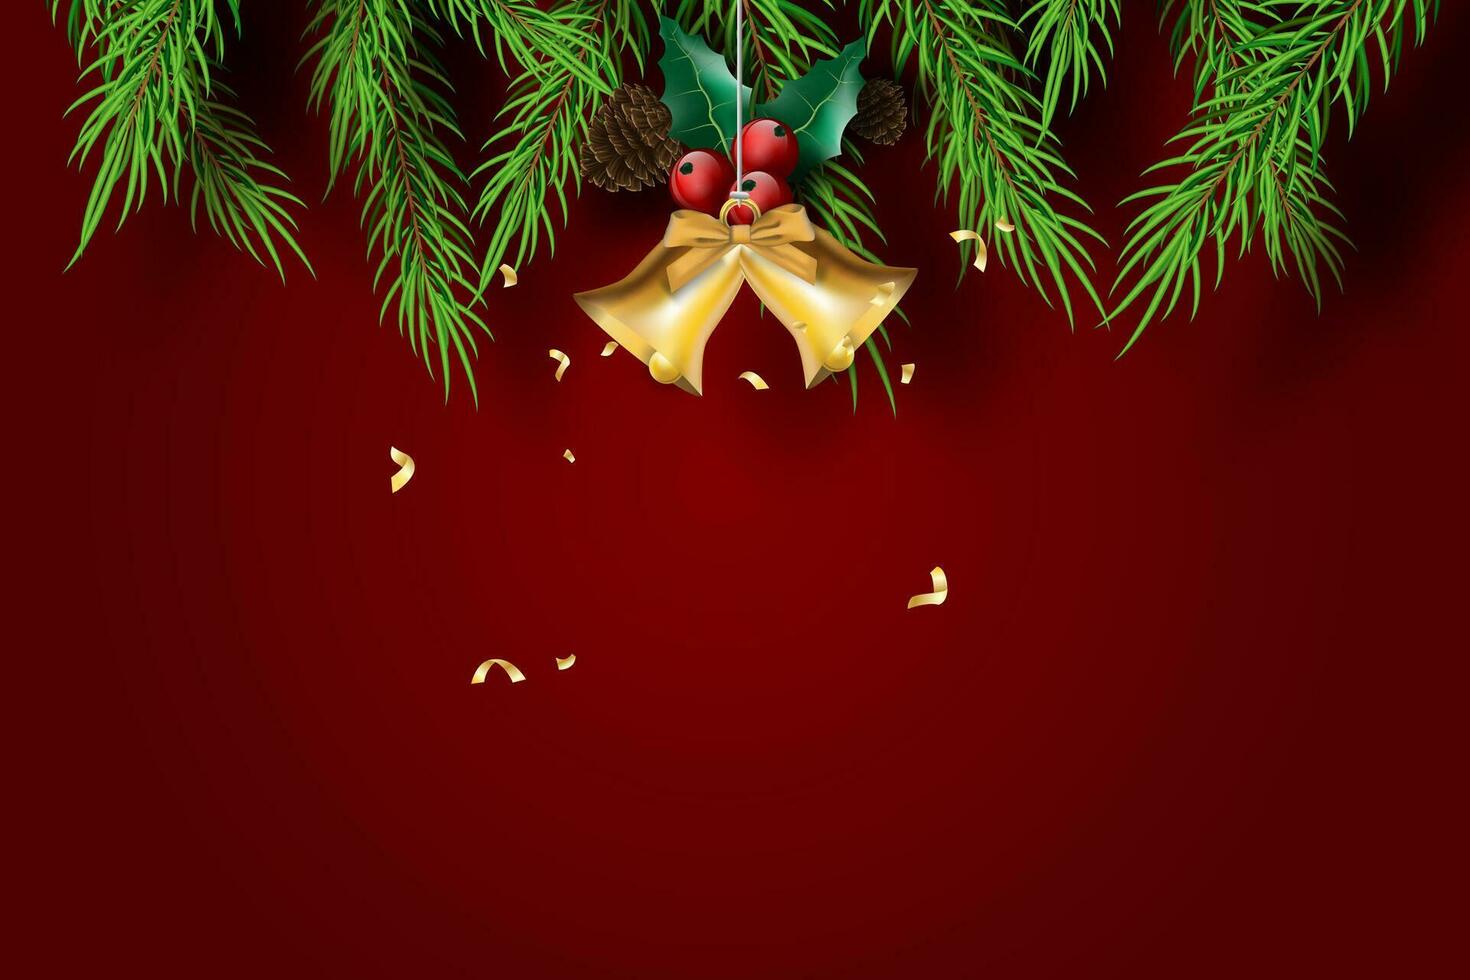 papel Arte de alegre Navidad y contento nuevo año con rojo tono fondo.creativo mínimo pino árbol y dorado campana para saludo tarjeta.vacaciones festival fiesta decoración elemento gráfico poster.vector vector